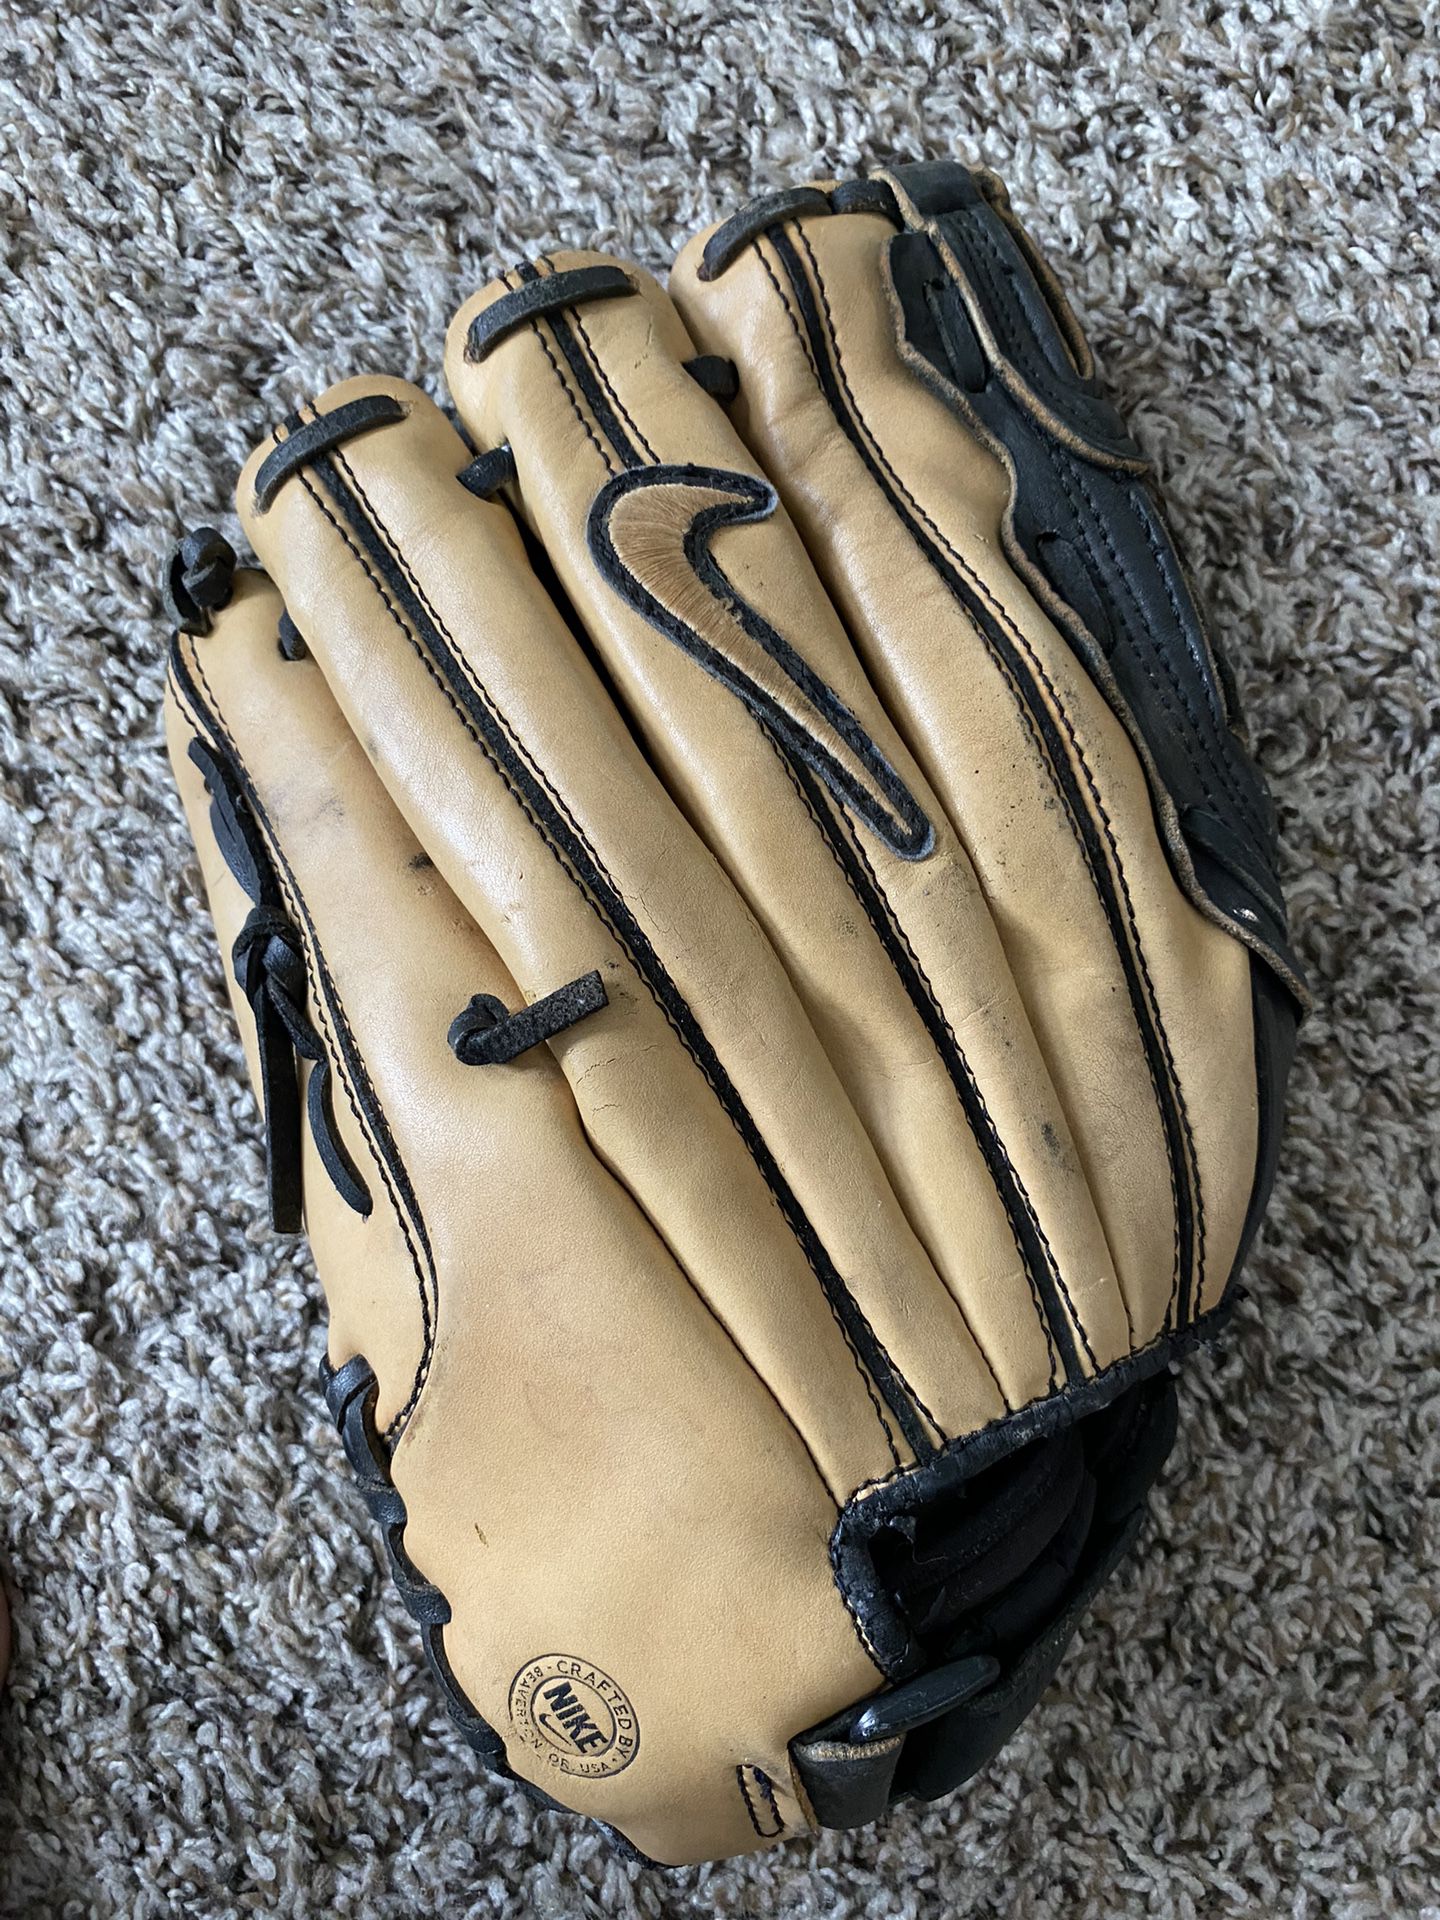 Baseball Glove 11”